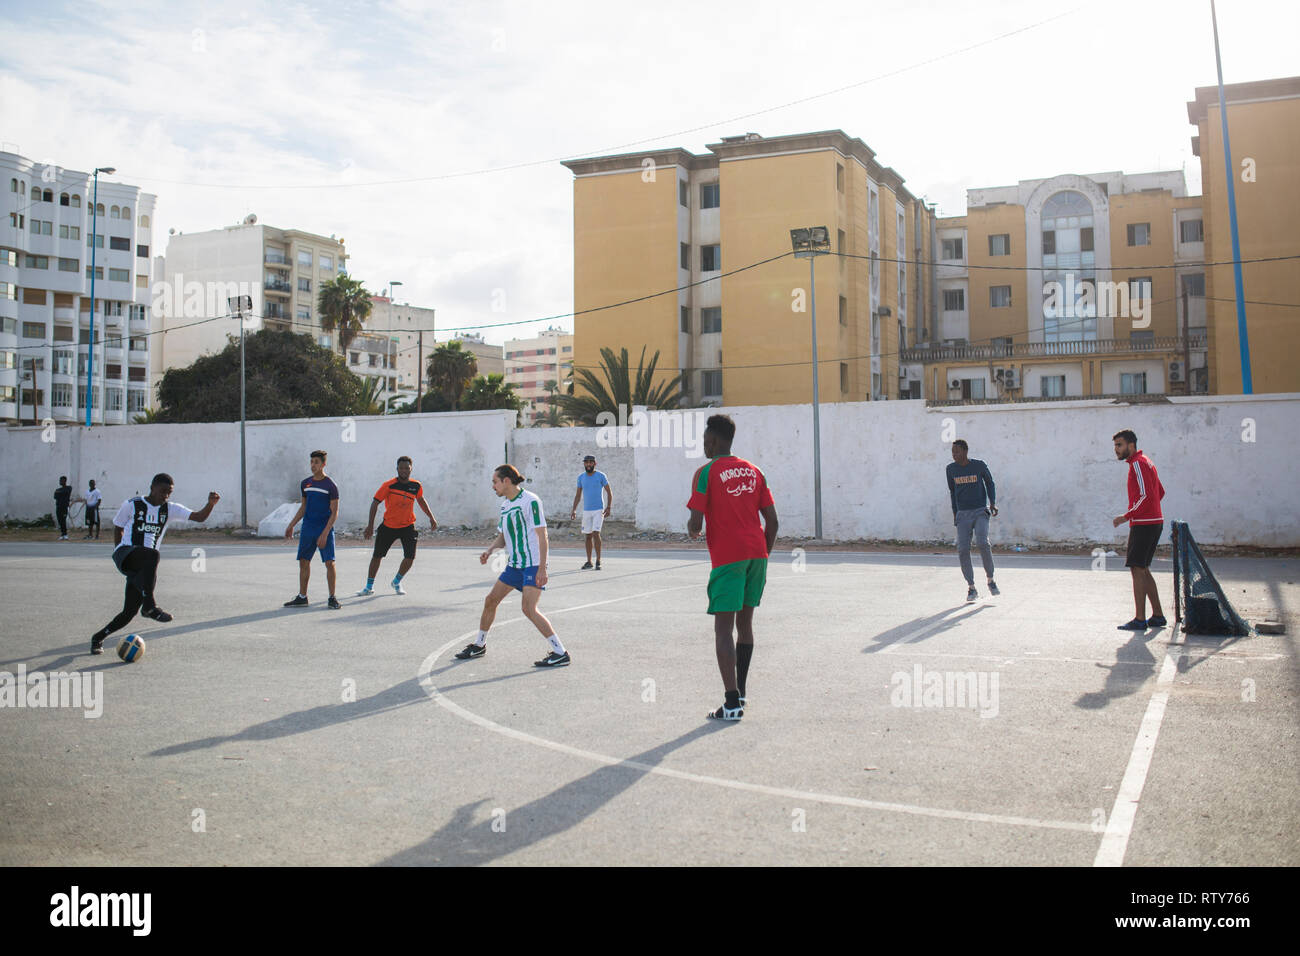 CASABLANCA, MOROCCO - MARCH 2, 2019:   A group of boys playing football  in Casablanca, Morocco. Stock Photo